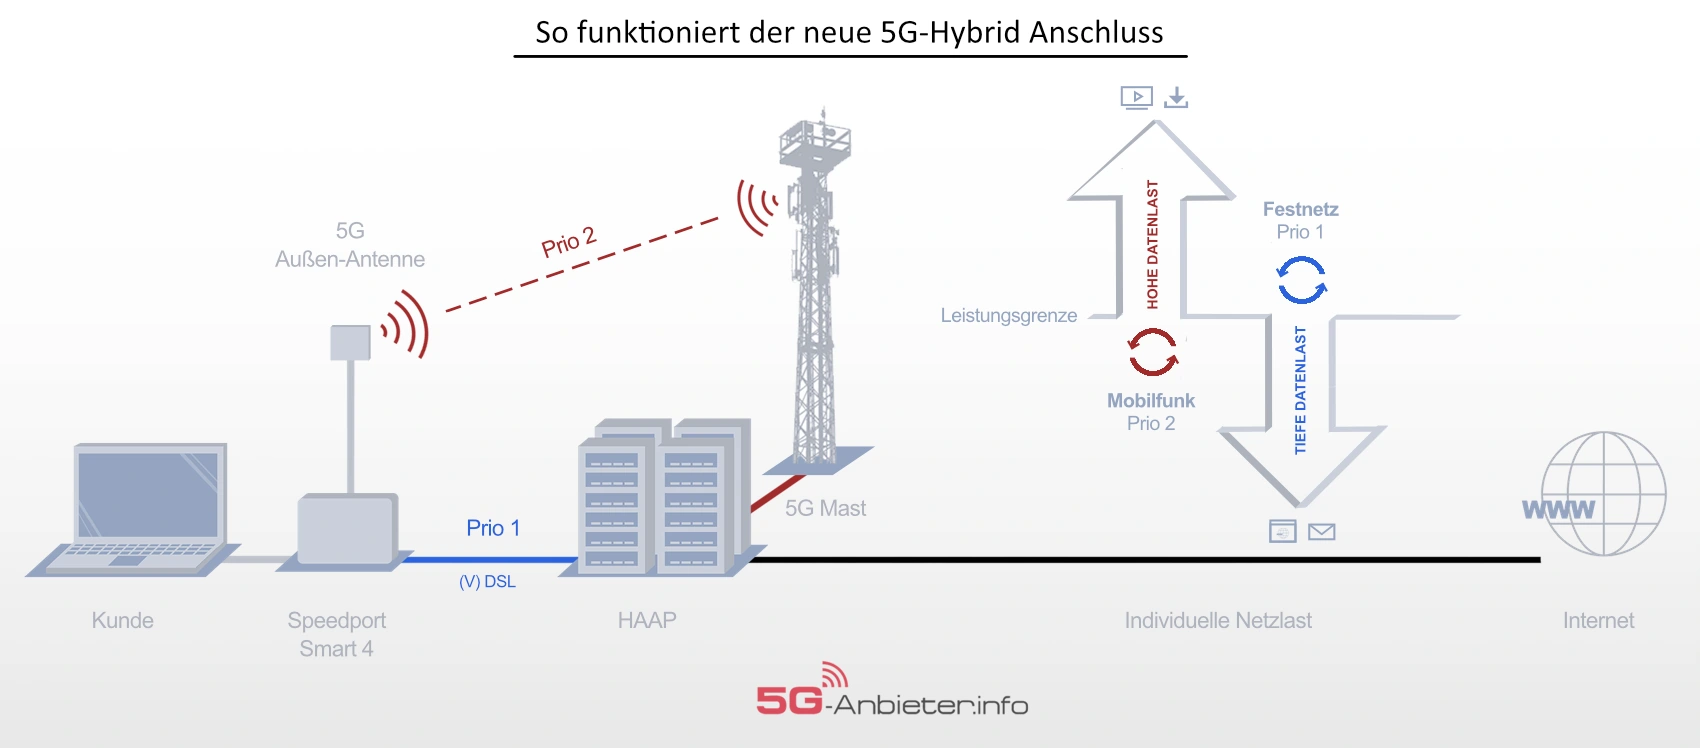 Infografik zur Funktionsweise von Hybid-Internet über 5G